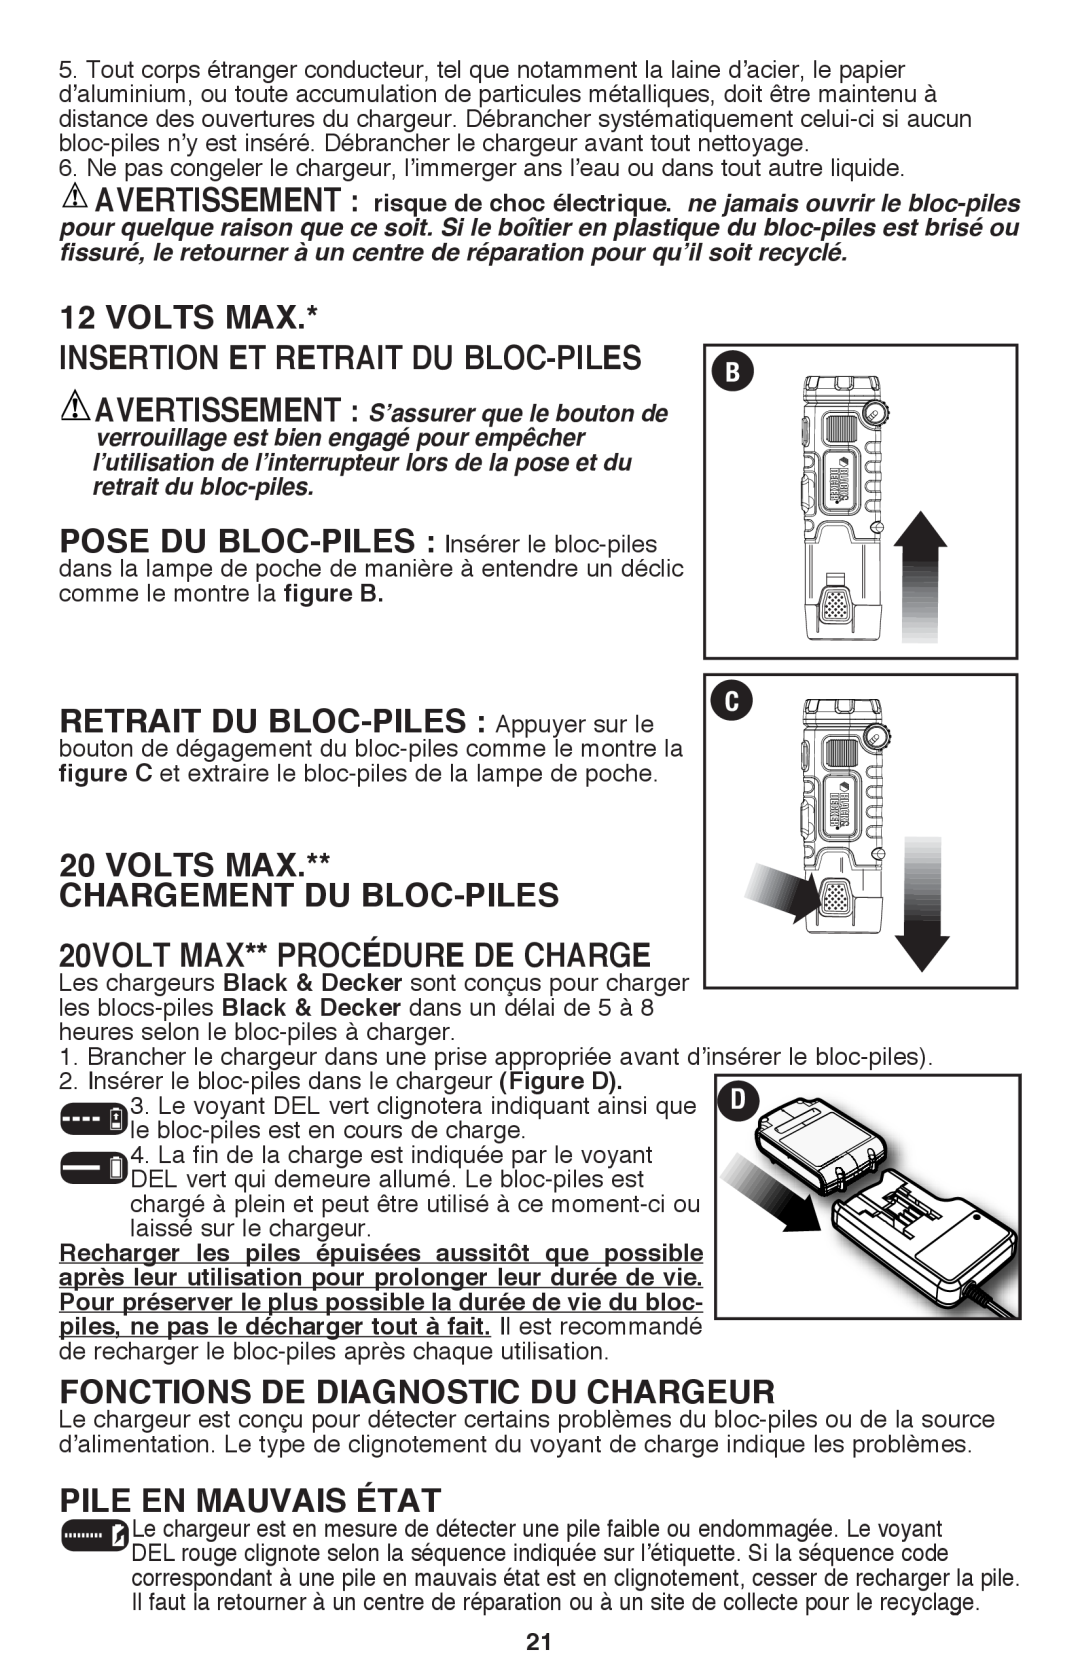 Black & Decker BDCF12, BDCF20 manual Insertion Et Retrait Du Bloc-Piles, POSE DU BLOC-PILES Insérer le bloc-piles, Volts Max 